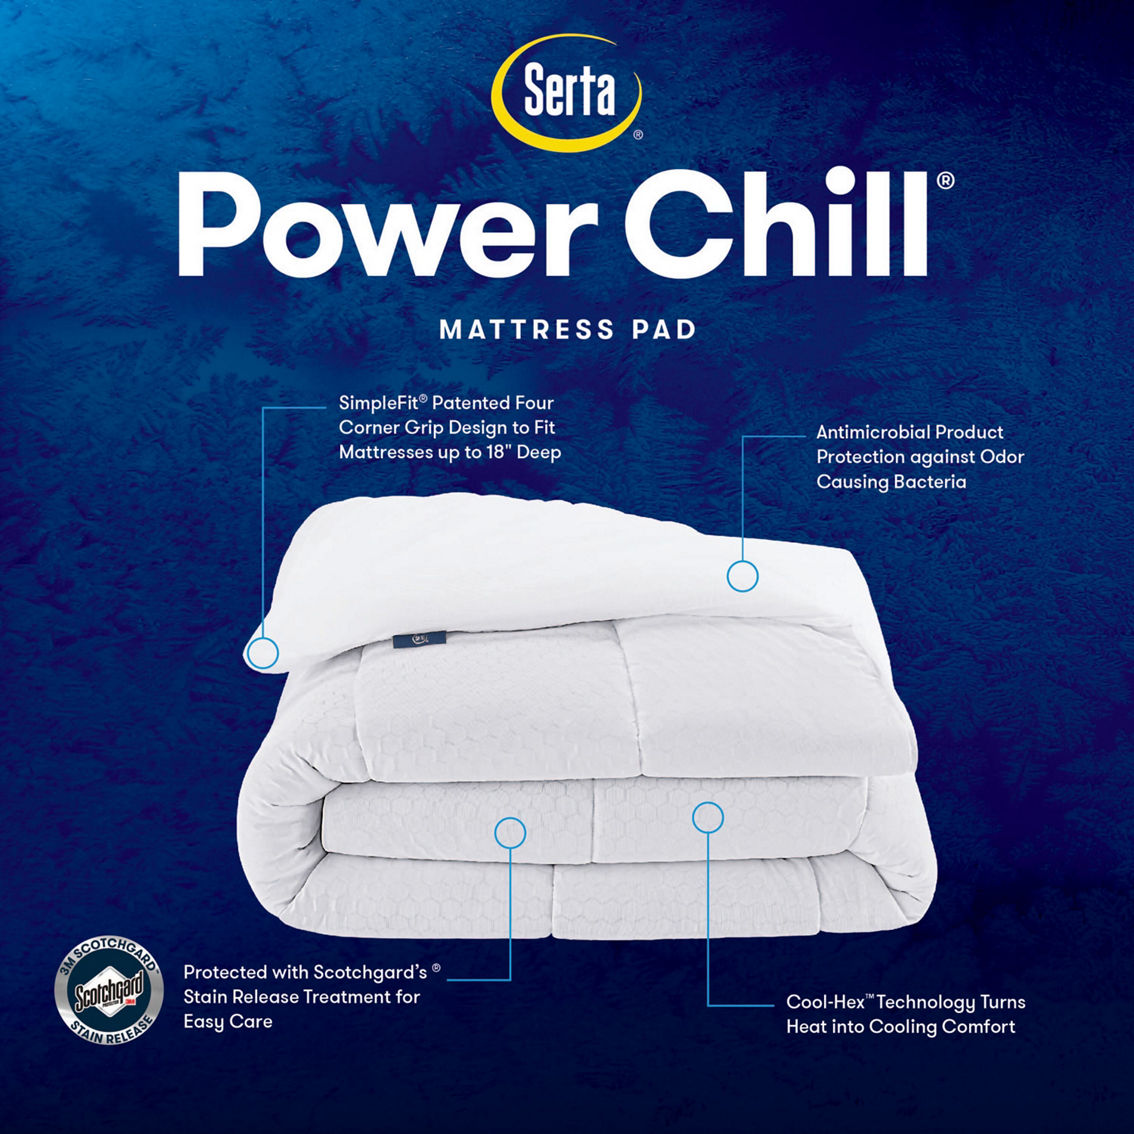 Serta Power Chill Mattress Pad - Image 7 of 7